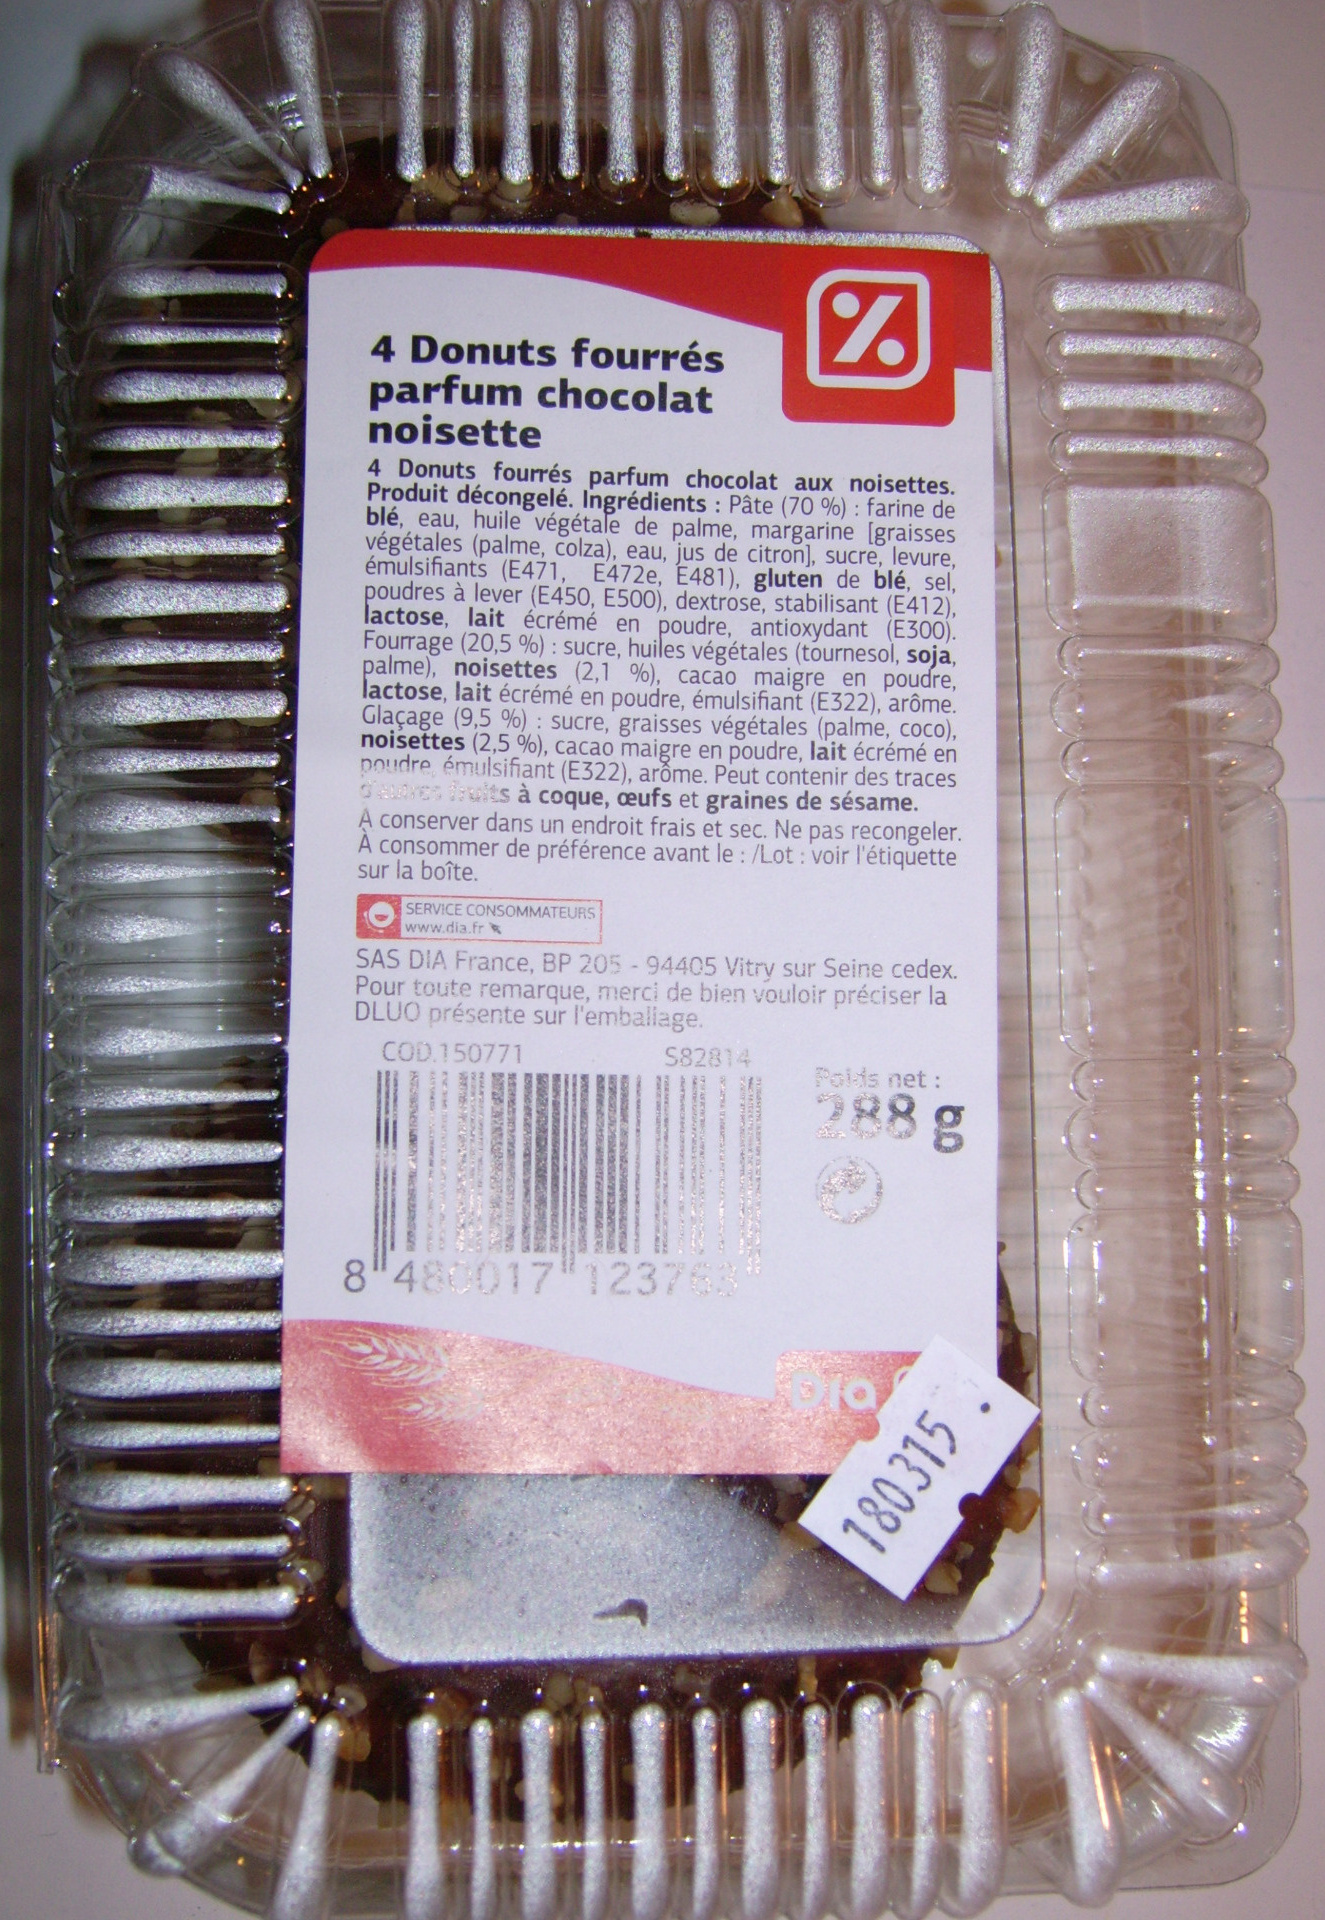 4 Donuts fourrés parfum chocolat noisette - Product - fr